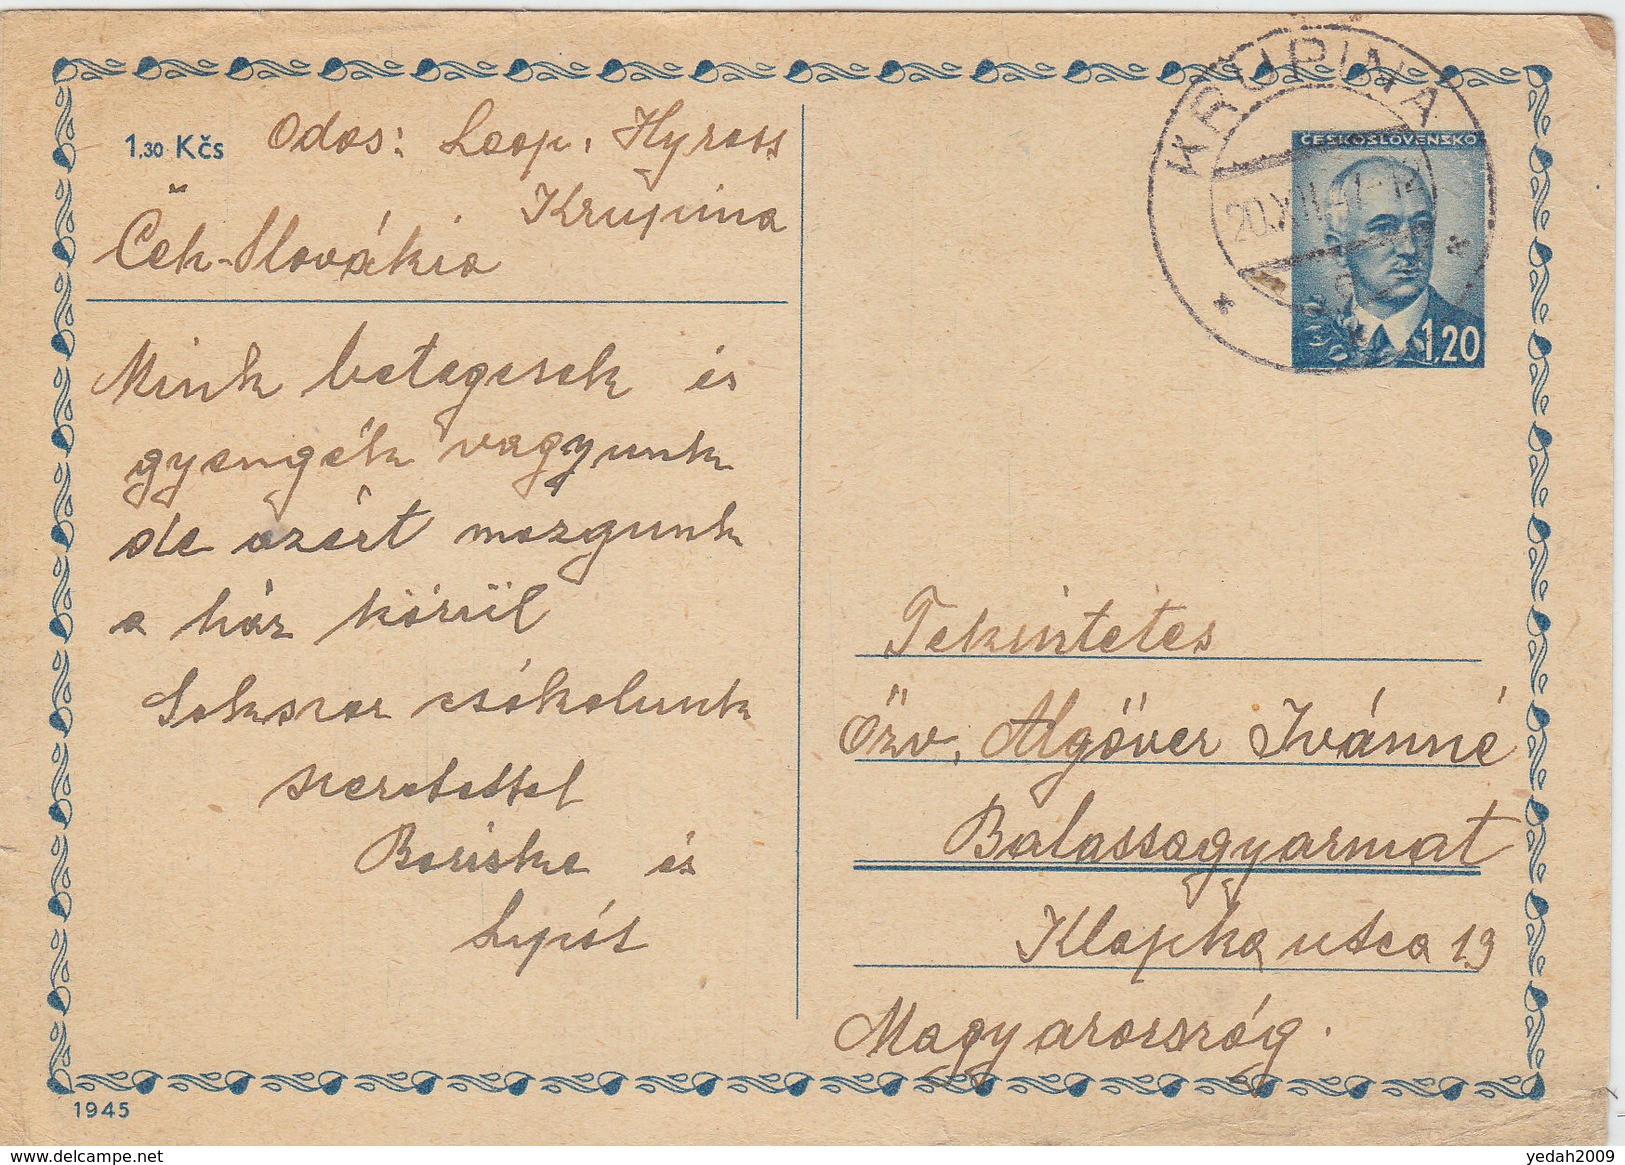 CZEHOSLOVAKIA POSTAL CARDS 1947 - Enveloppes